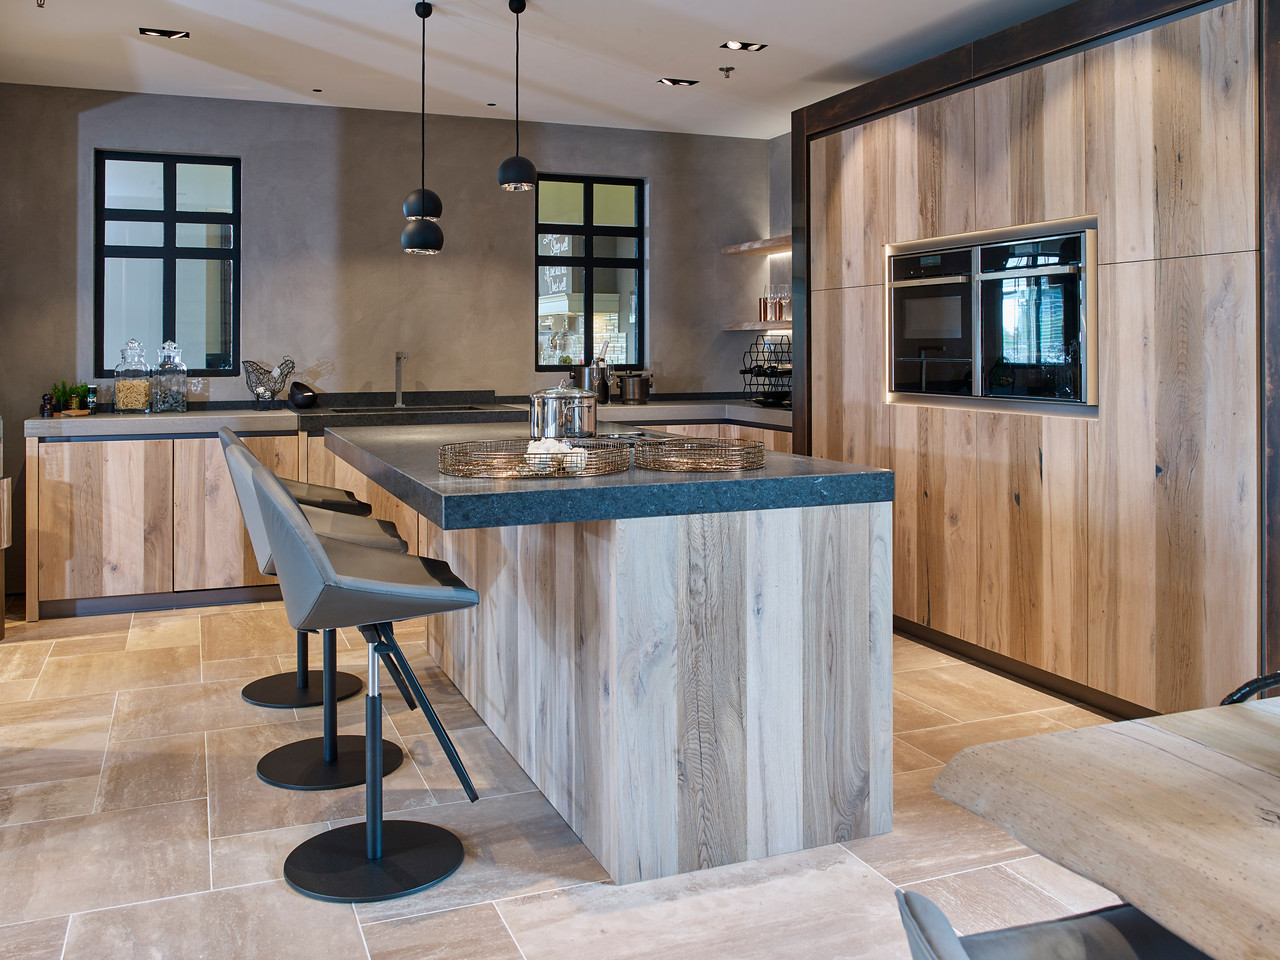 Foto: Studio 92a Tieleman Exclusief Norfolk houten veroudert eiken keuken met koperen stollen  beton en graniet aanrechtblad tieleman keukens 3